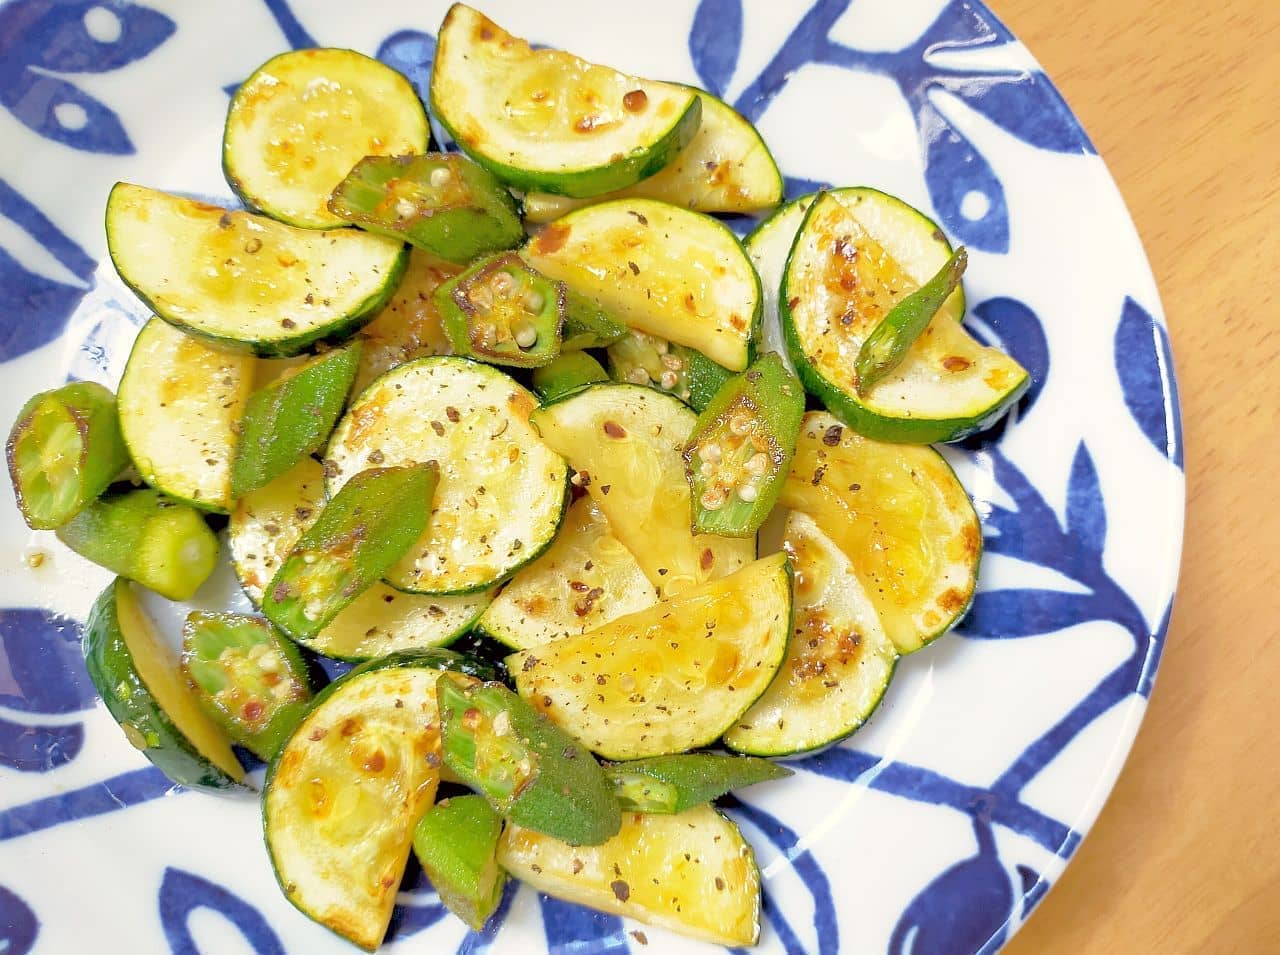 "Stir-fried okra and zucchini butter" recipe